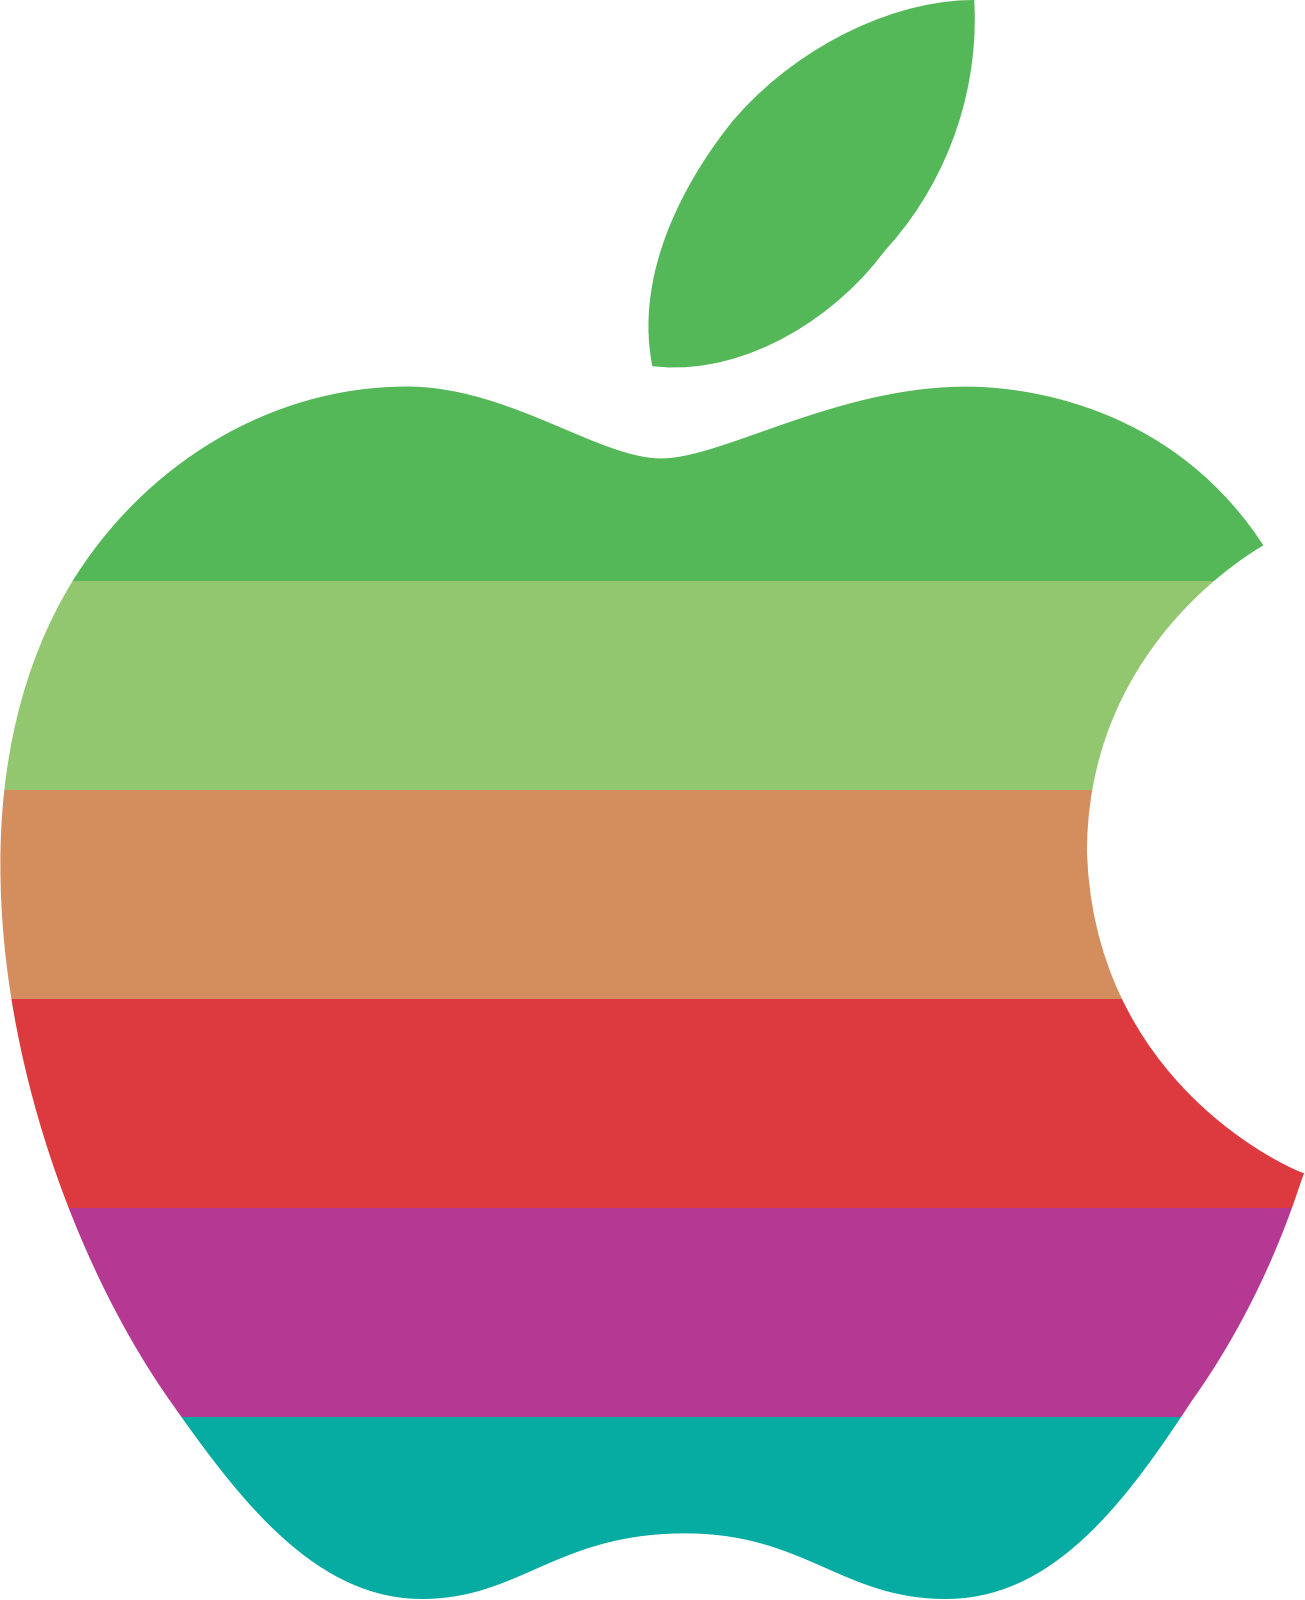 Matt Bonney Retro apple logo for WWDC 2016